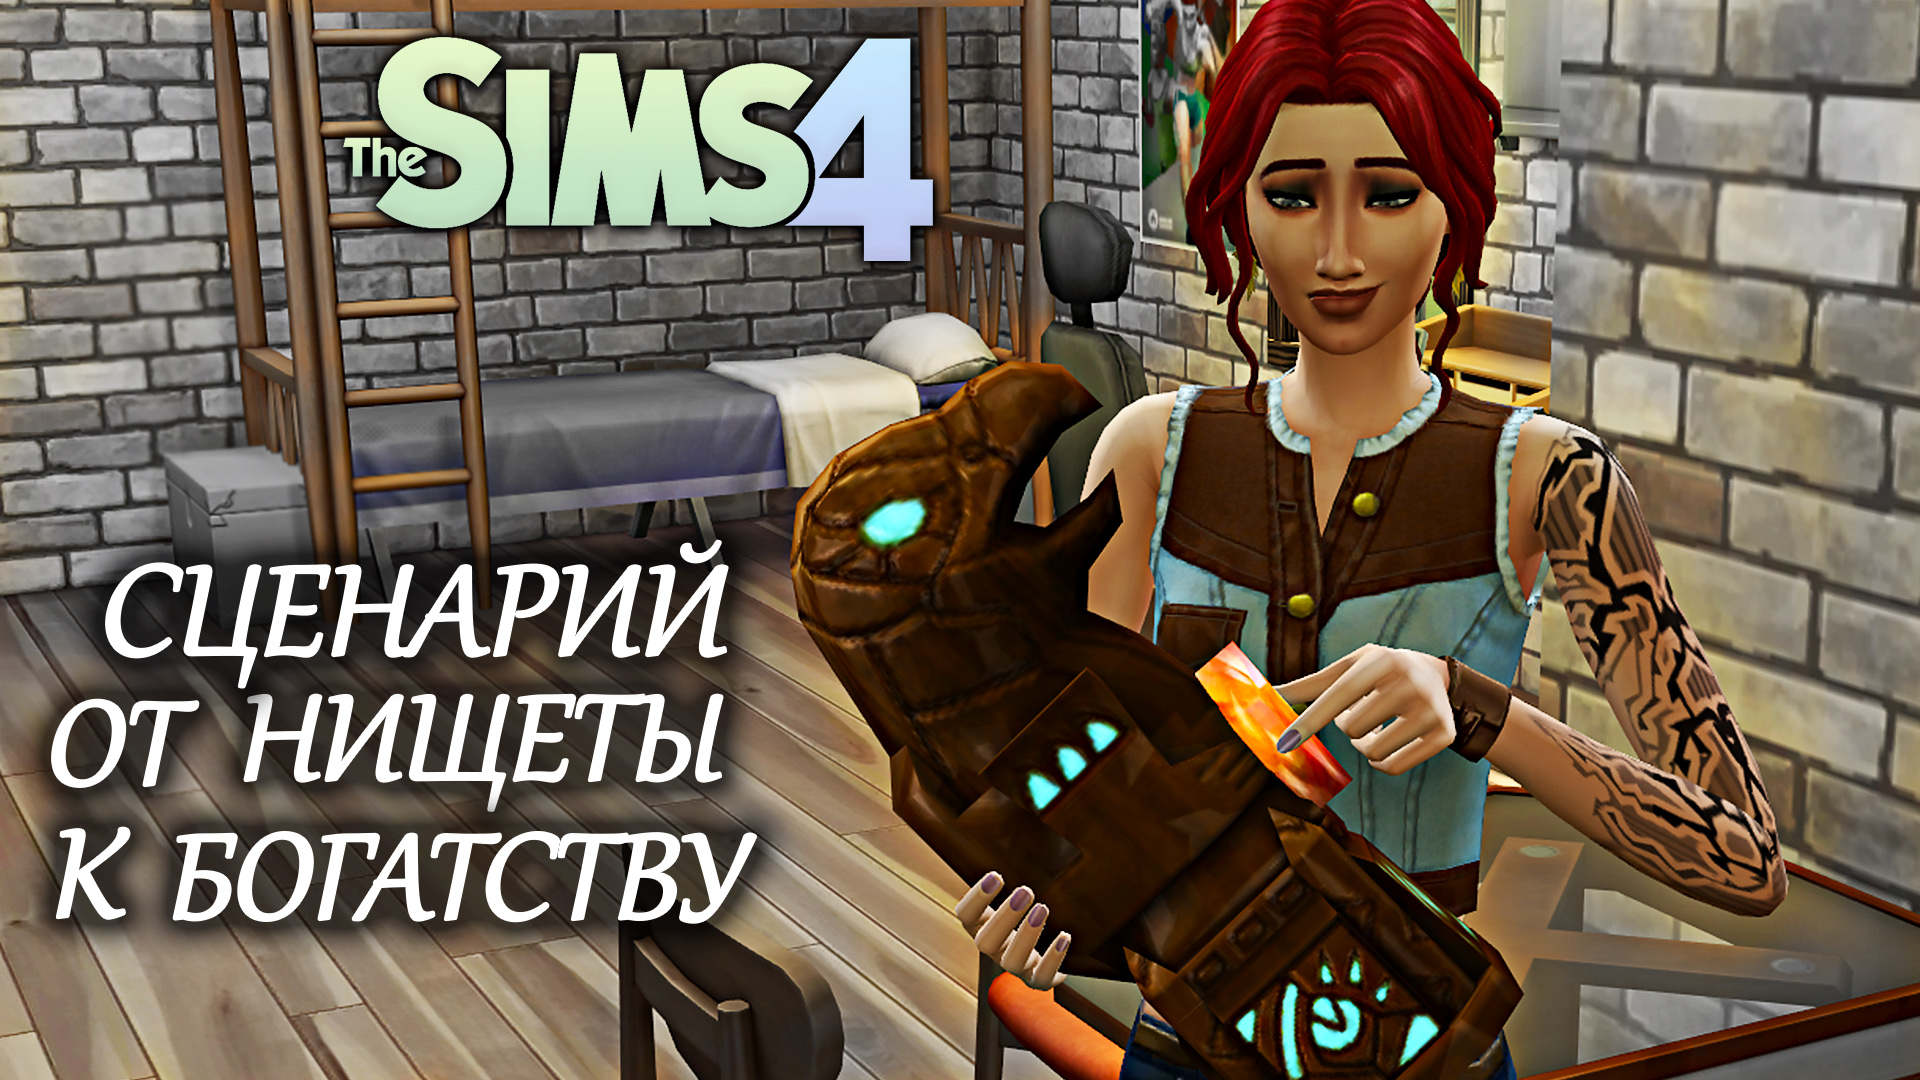 Делаем деньги на распродаже археологических ценностей/ Сценарий The Sims 4